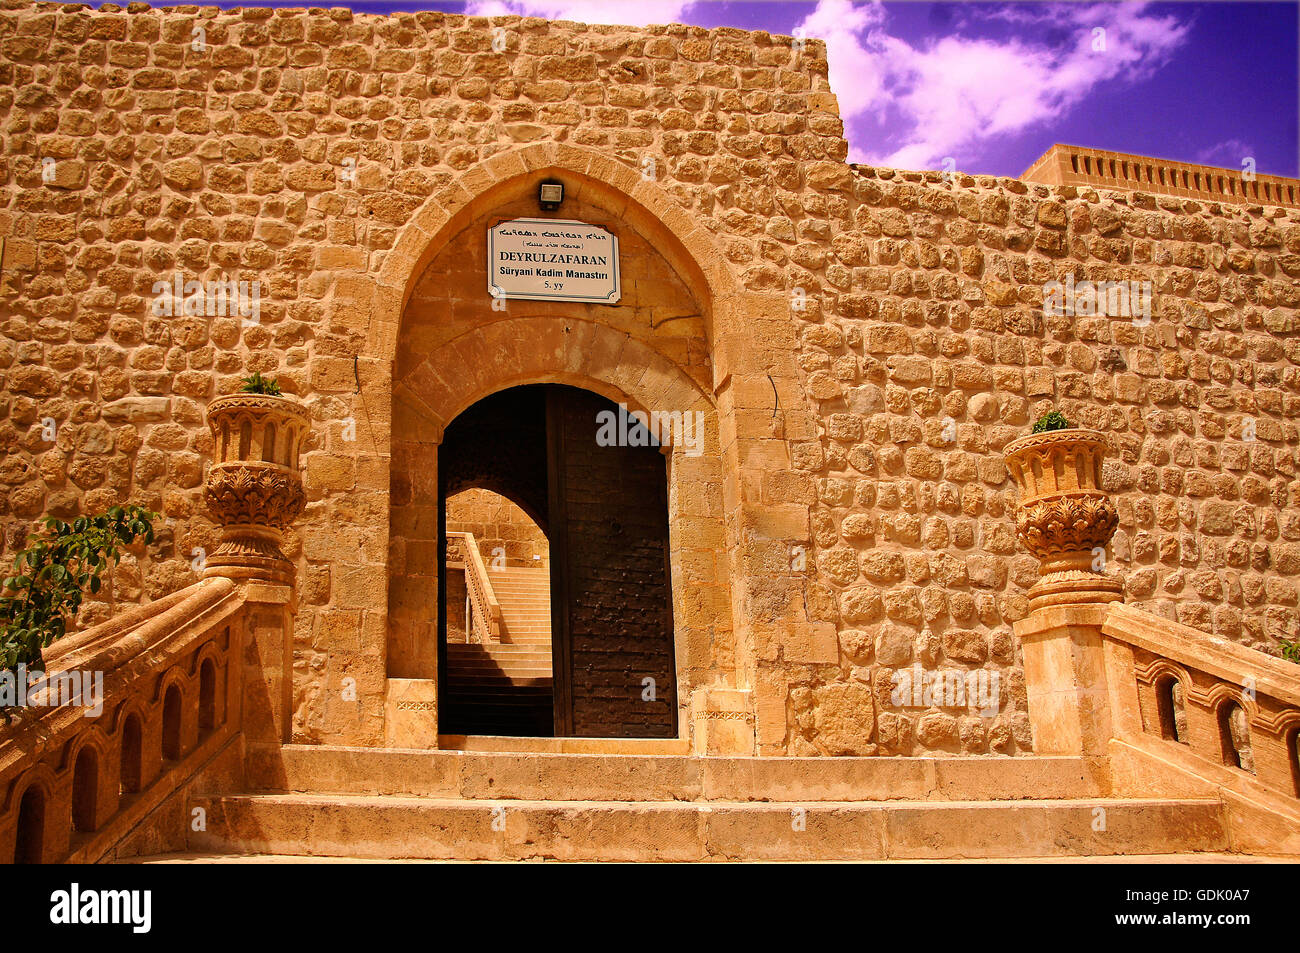 Deyr Ul-Zafaran Kloster, Türkei. Es ist eine wichtige syrisch-orthodoxe Kloster in der Nähe der Stadt Mardin in der Türkei. Das Kloster befindet sich in der Region bekannt als Tur Abdin, das Mutterland des assyrischen/Syrer. Es ist in der Regel besser bekannt unter seinem Spitznamen, Stockfoto